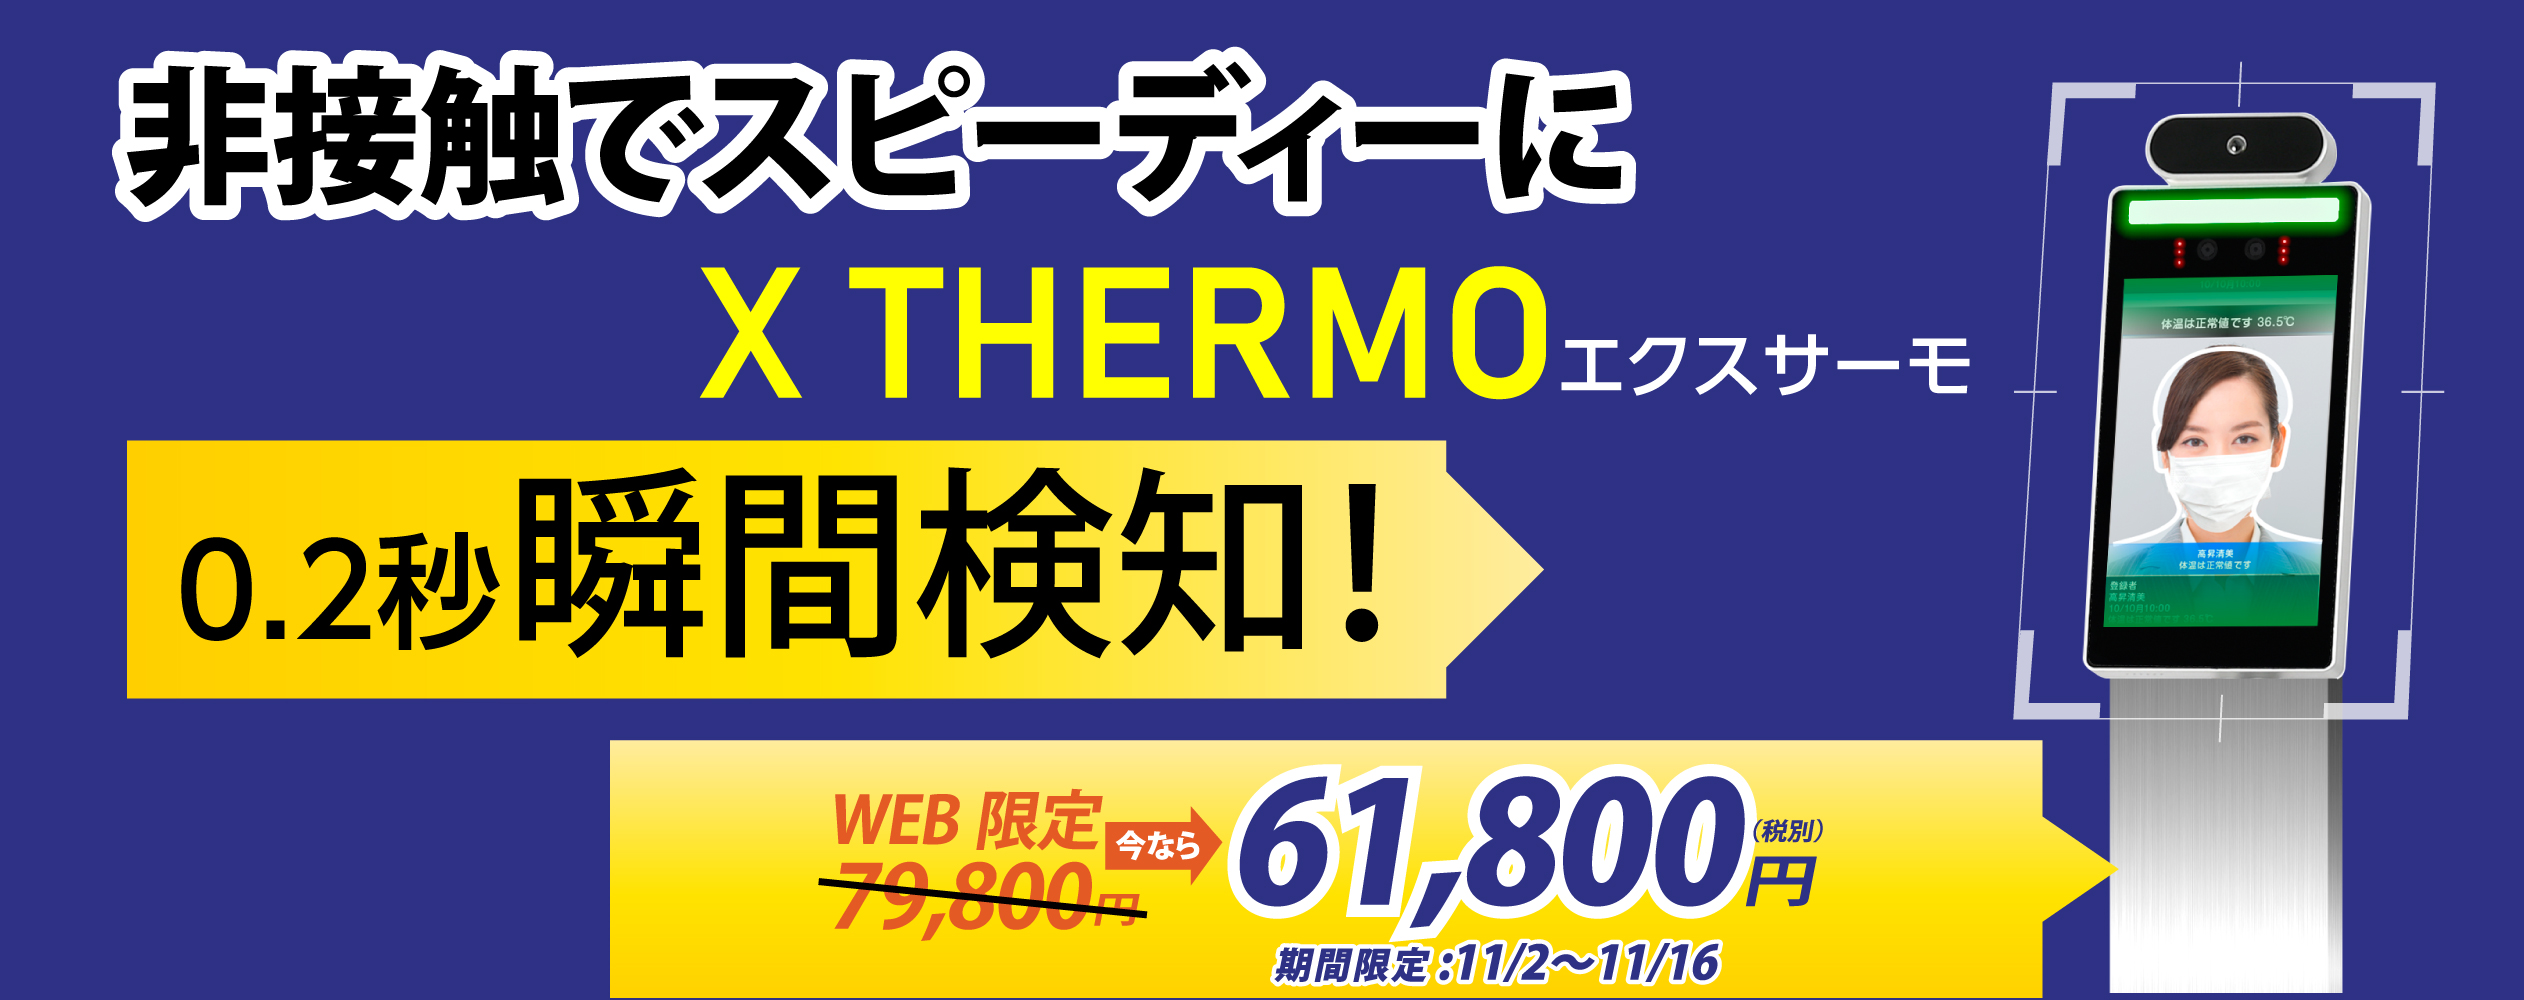 X Thermo 販売キャンペーン